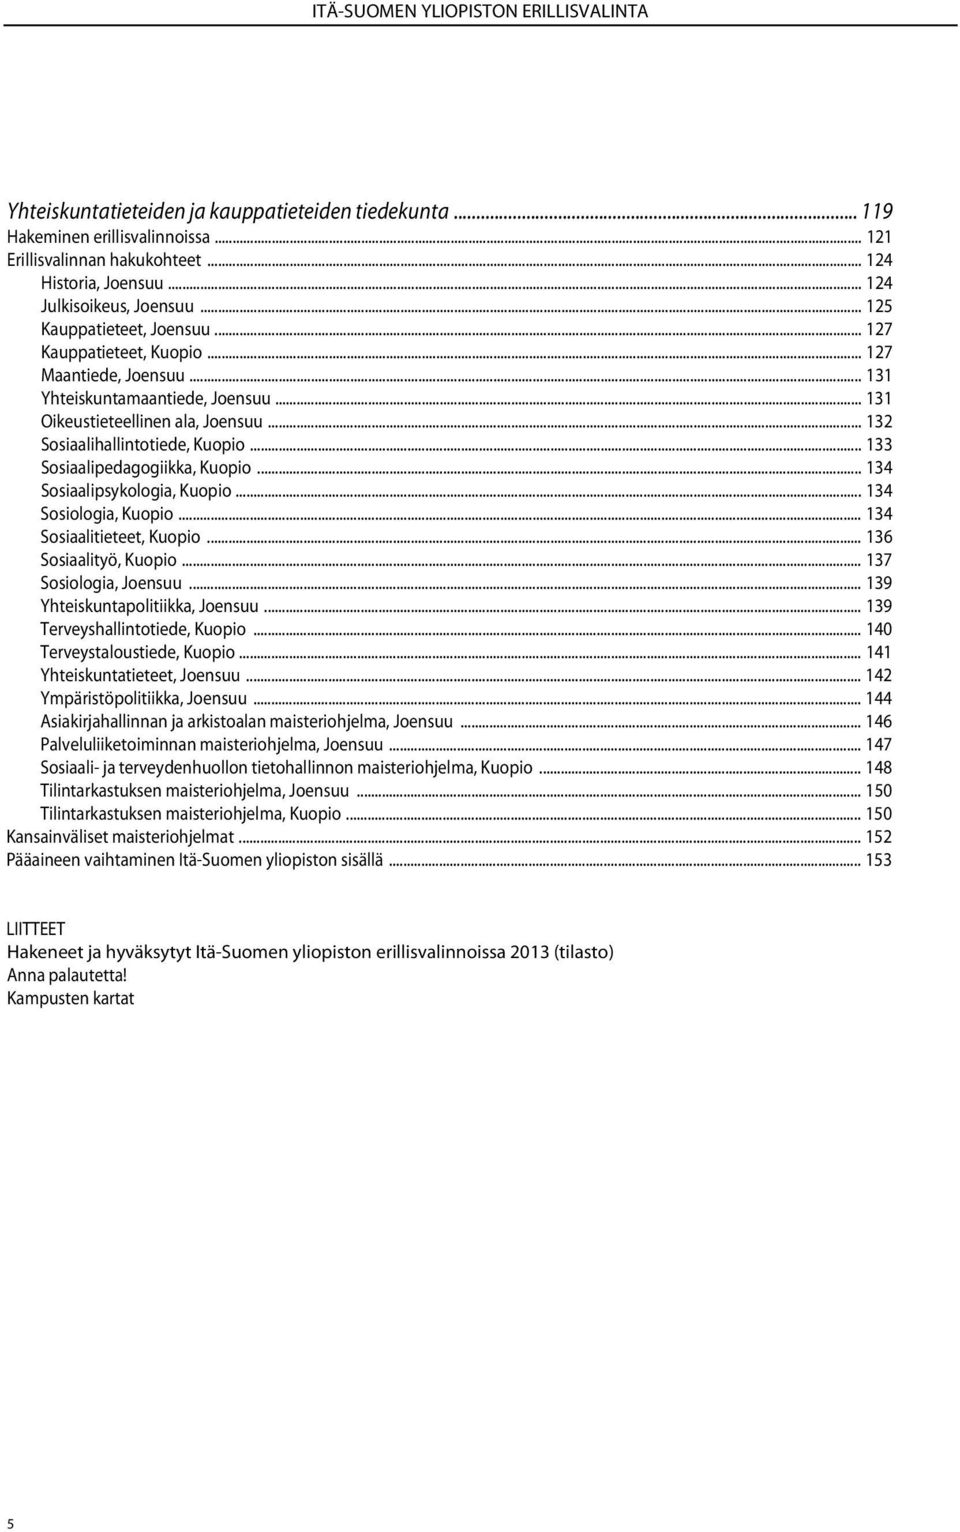 .. 132 Sosiaalihallintotiede, Kuopio... 133 Sosiaalipedagogiikka, Kuopio... 134 Sosiaalipsykologia, Kuopio... 134 Sosiologia, Kuopio... 134 Sosiaalitieteet, Kuopio... 136 Sosiaalityö, Kuopio.